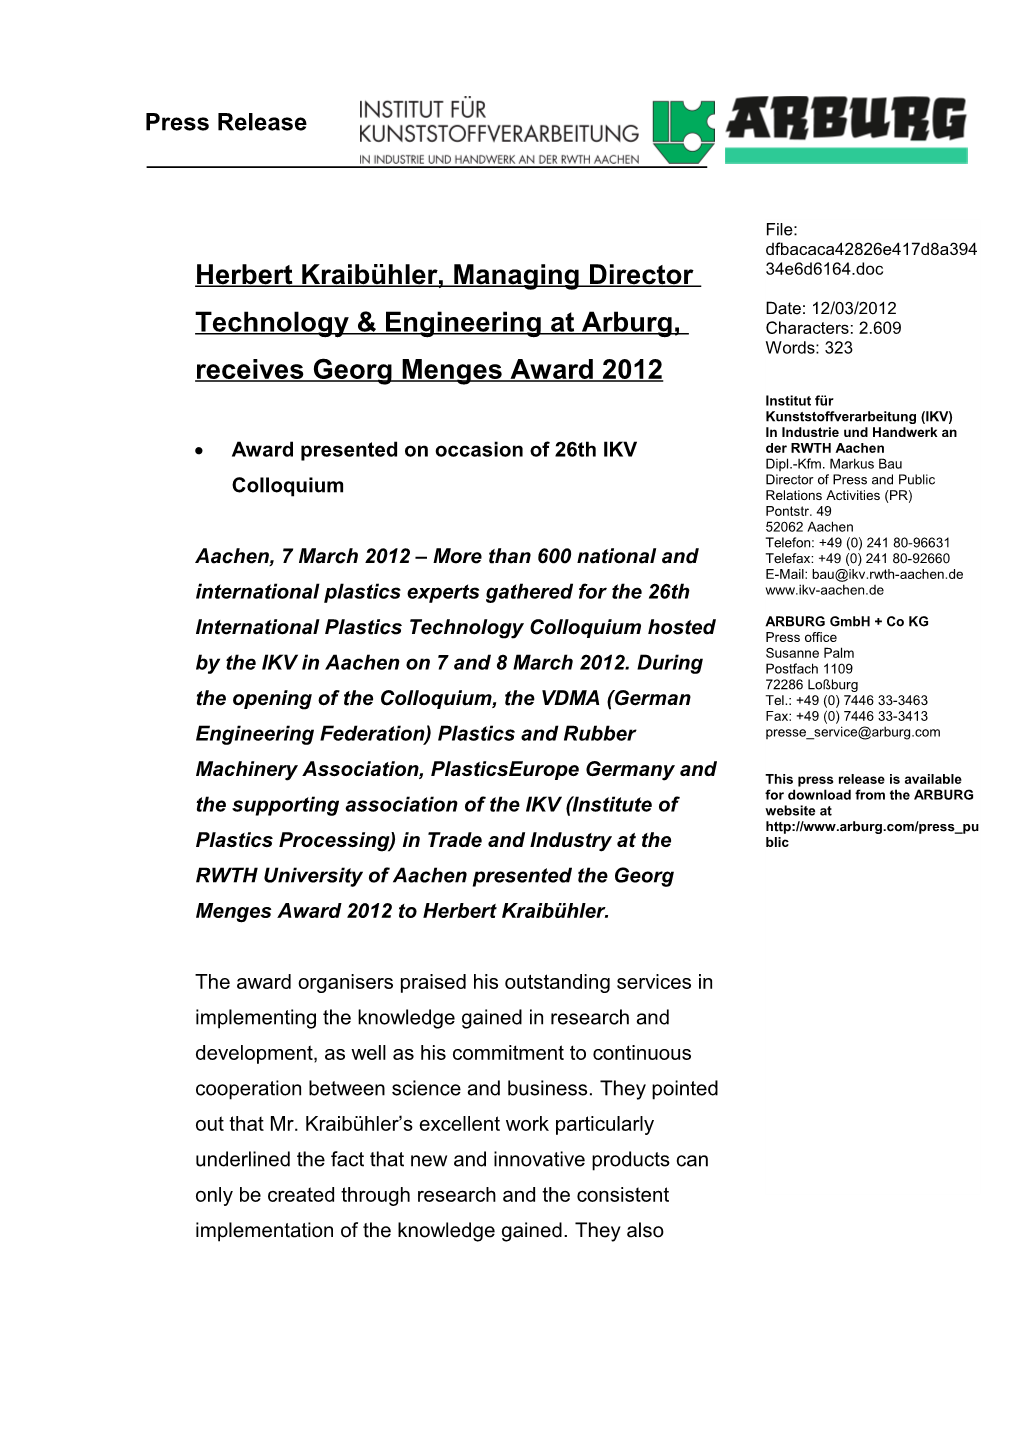 Herbert Kraibühler, Managing Director Technology & Engineering at Arburg, Receives Georg